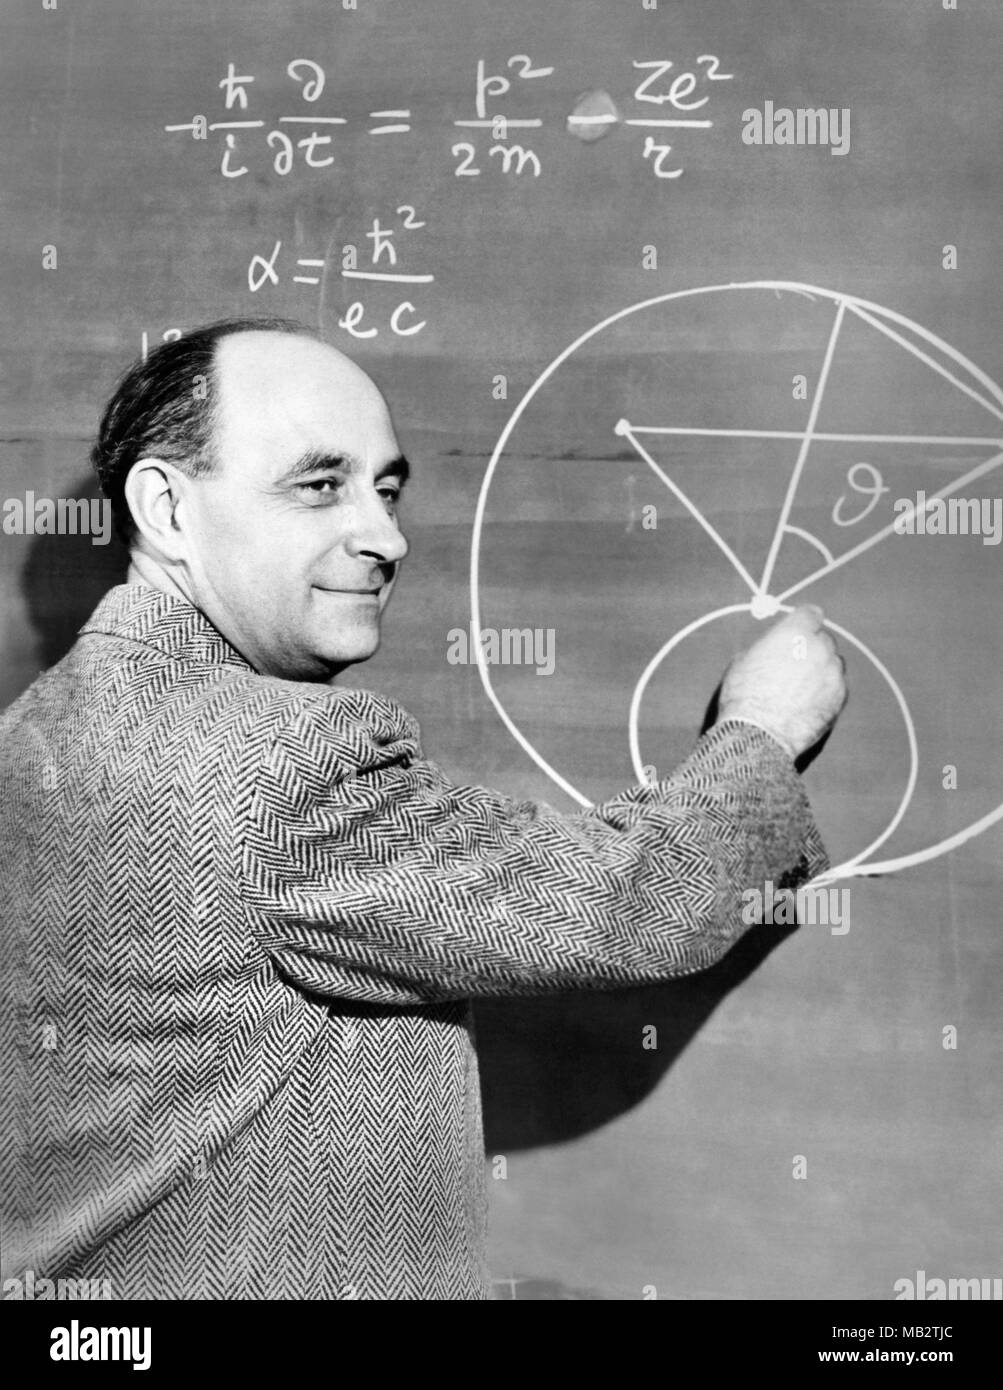 Enrico Fermi (1901-1954), fisico italo-americano e pioniere nel settore della fissione nucleare, demonstates una equazione di fisica su una lavagna, c1950. Fermi ha lavorato sul progetto Manhattan durante la II guerra mondiale e ha reso importanti contributi allo sviluppo della teoria quantistica, nucleare e della fisica delle particelle e la meccanica statistica. Foto Stock